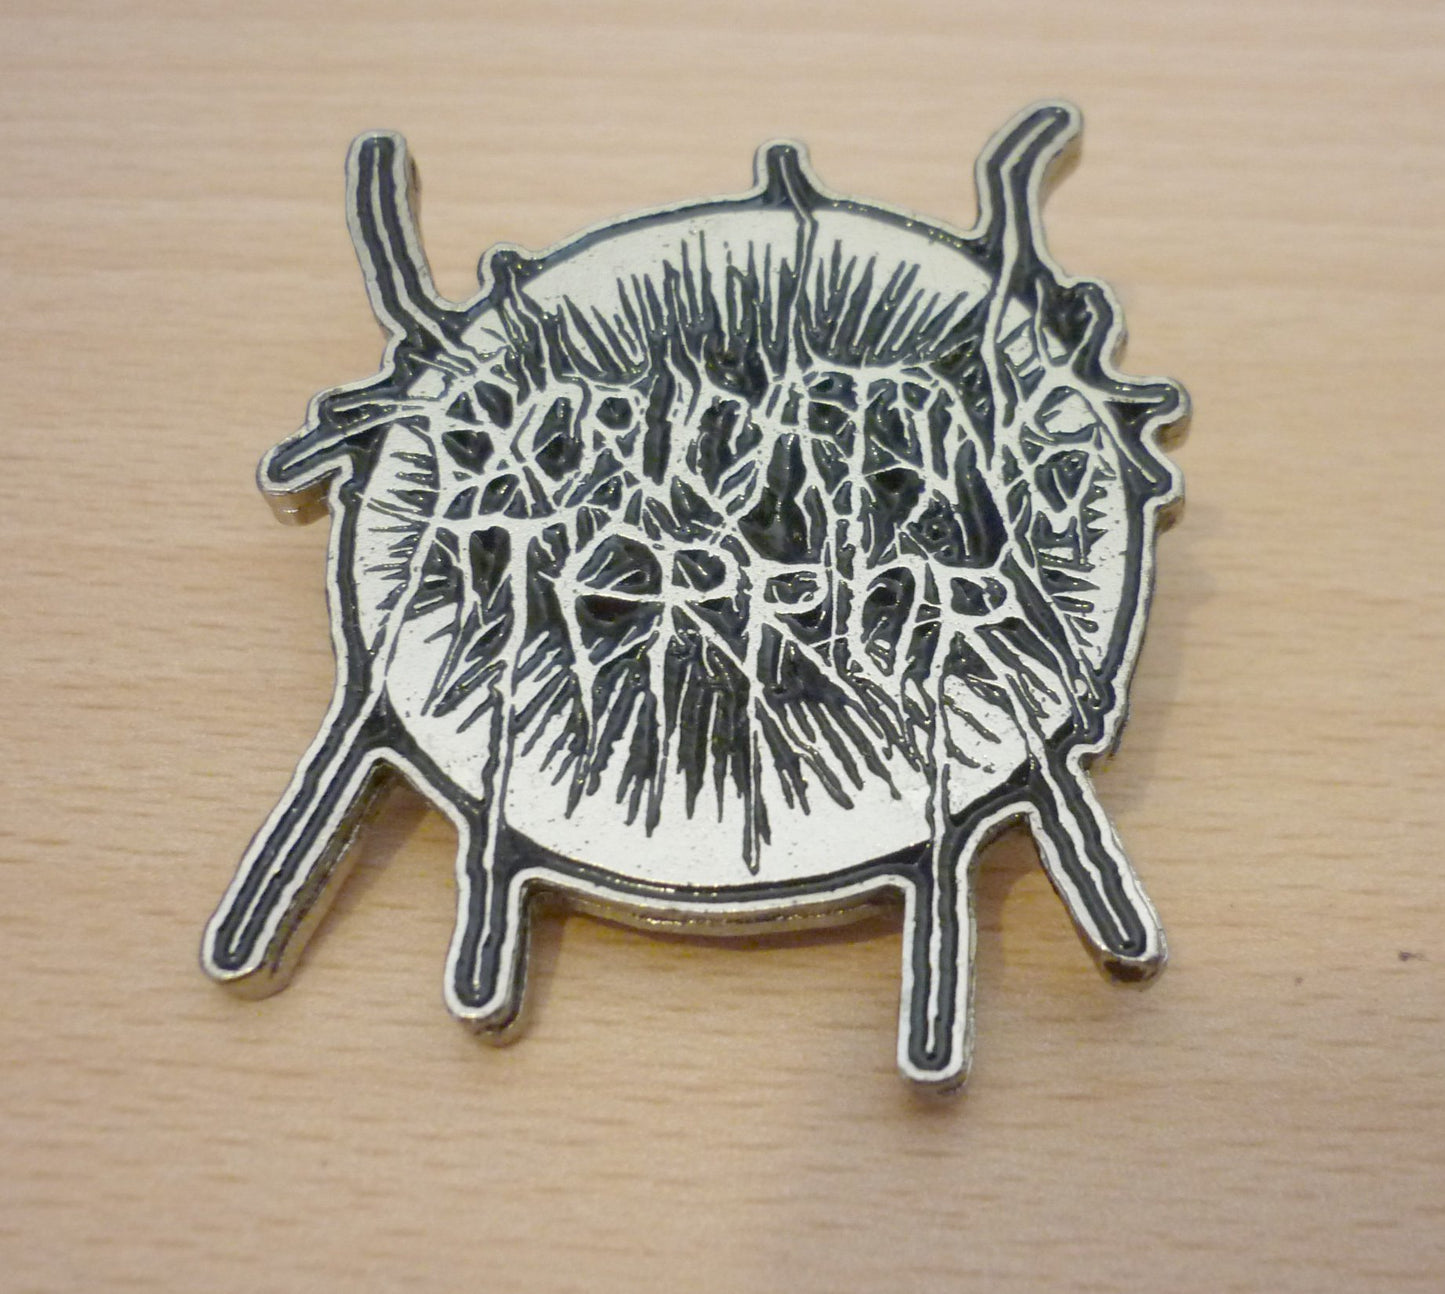 Excruciating Terror - Enamel Pin